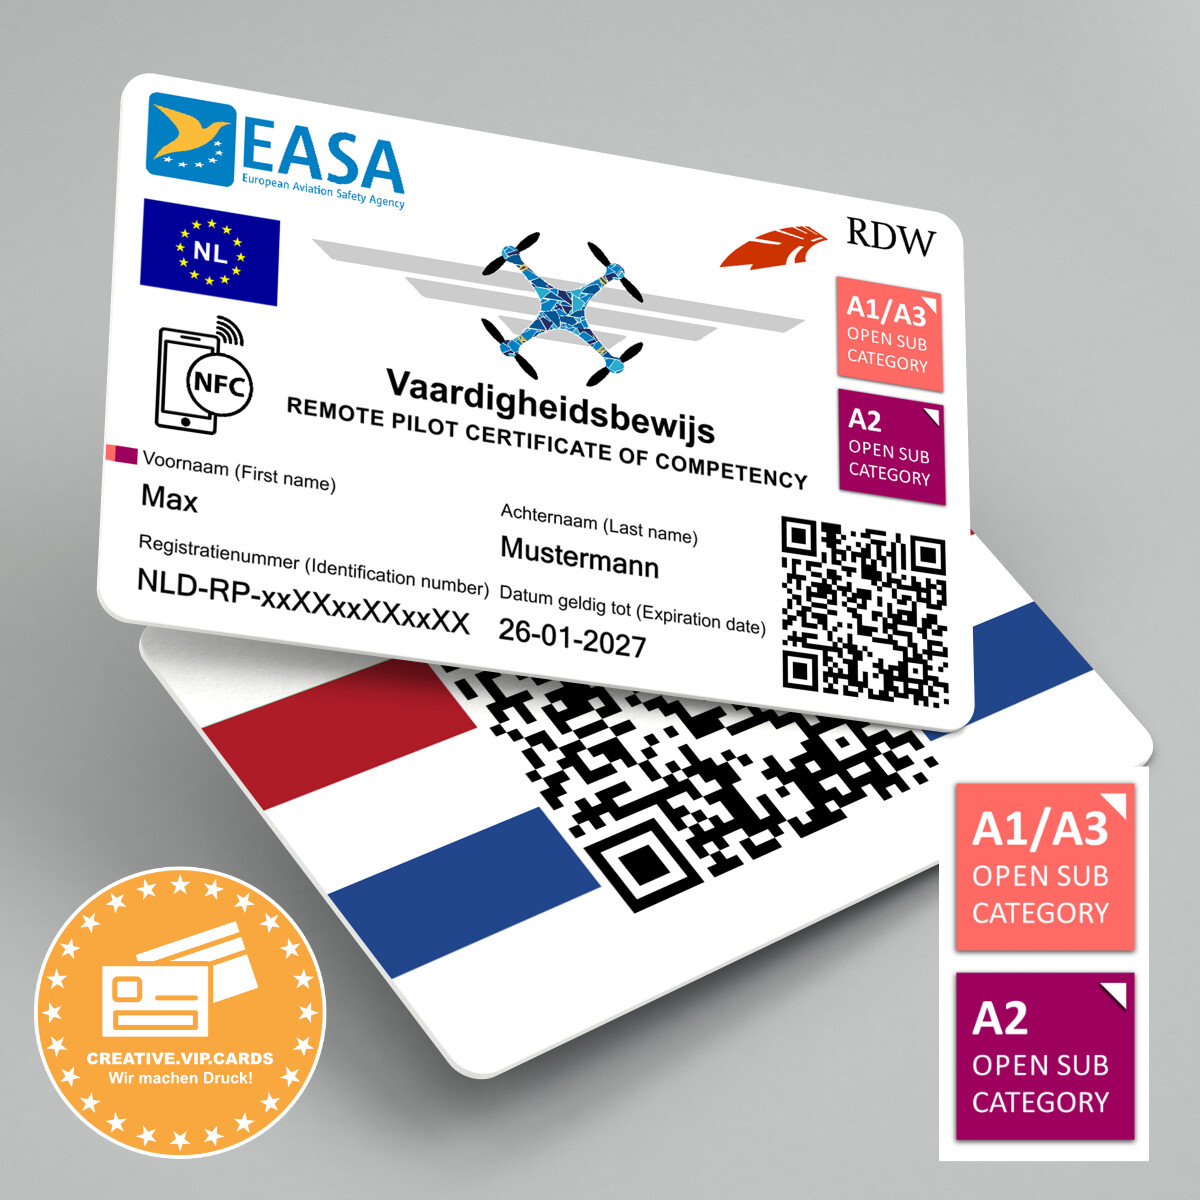 Ihren Drohnenführerschein A1/A3 und A2 (Niederlande) auf eine NFC - Plastikkarte im Kreditkartenformat drucken lassen